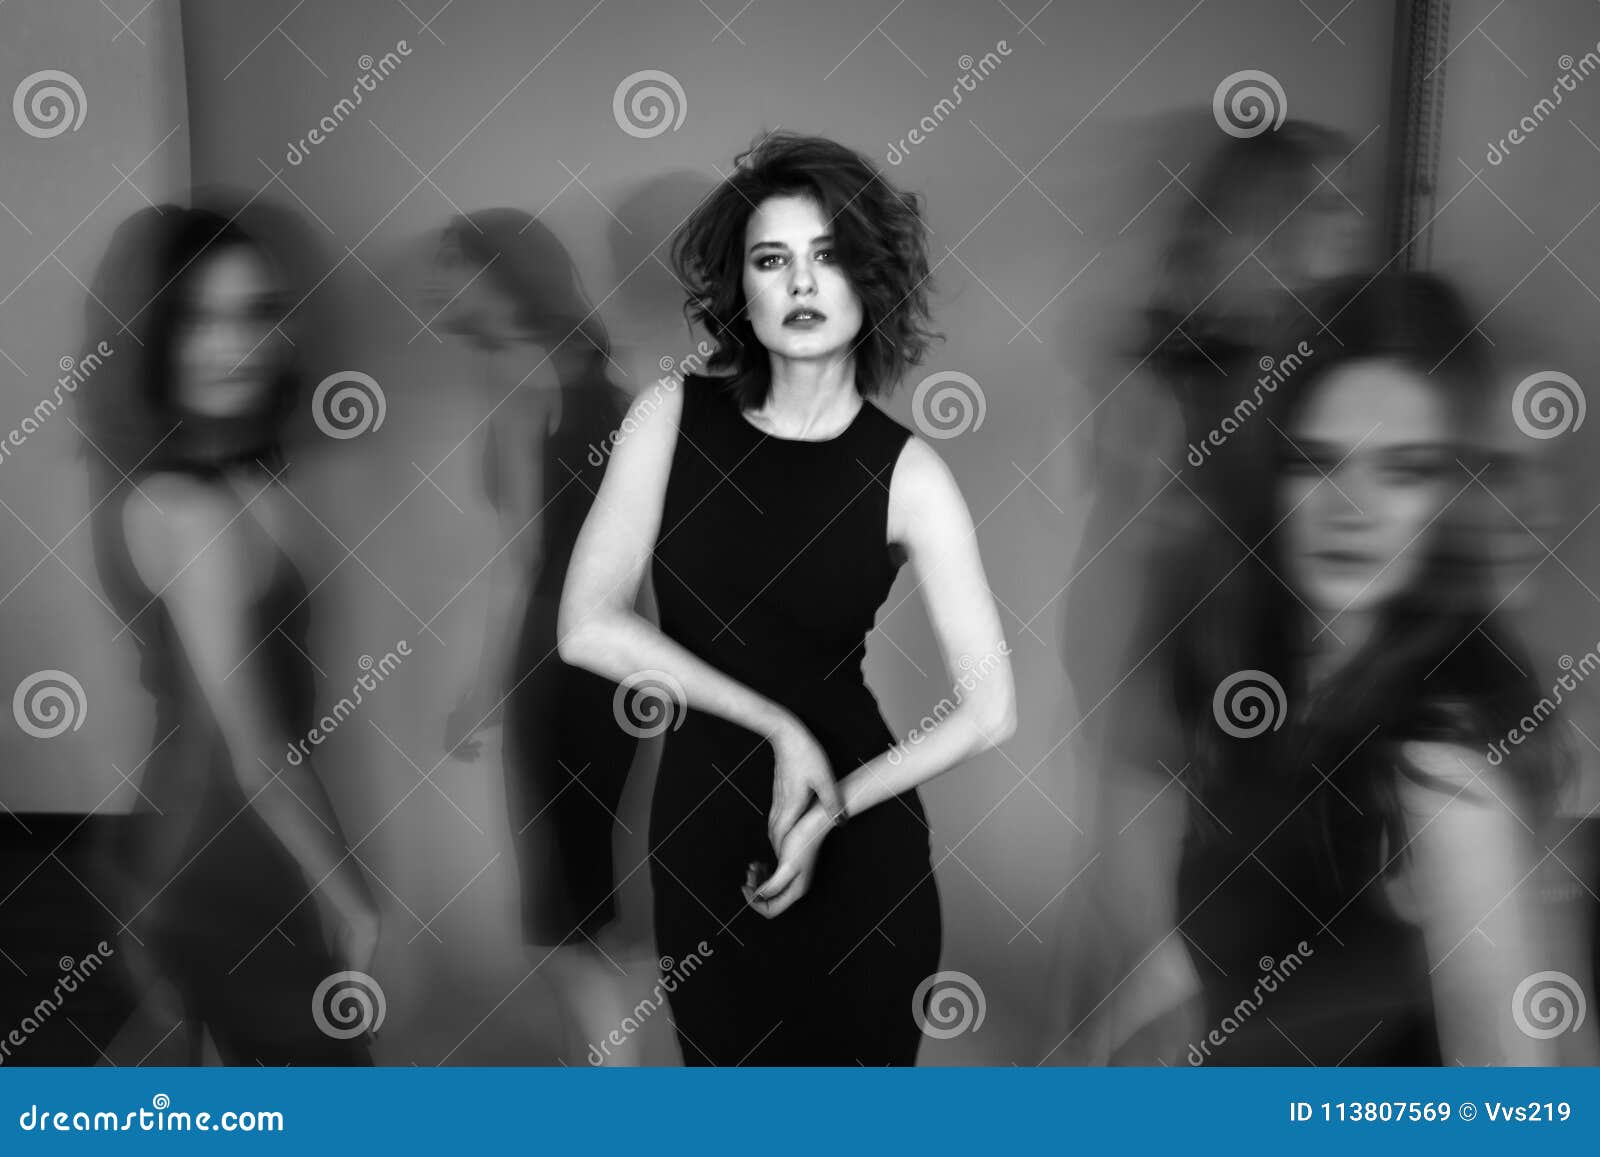 Черно Белое Фото Женщины В Платье